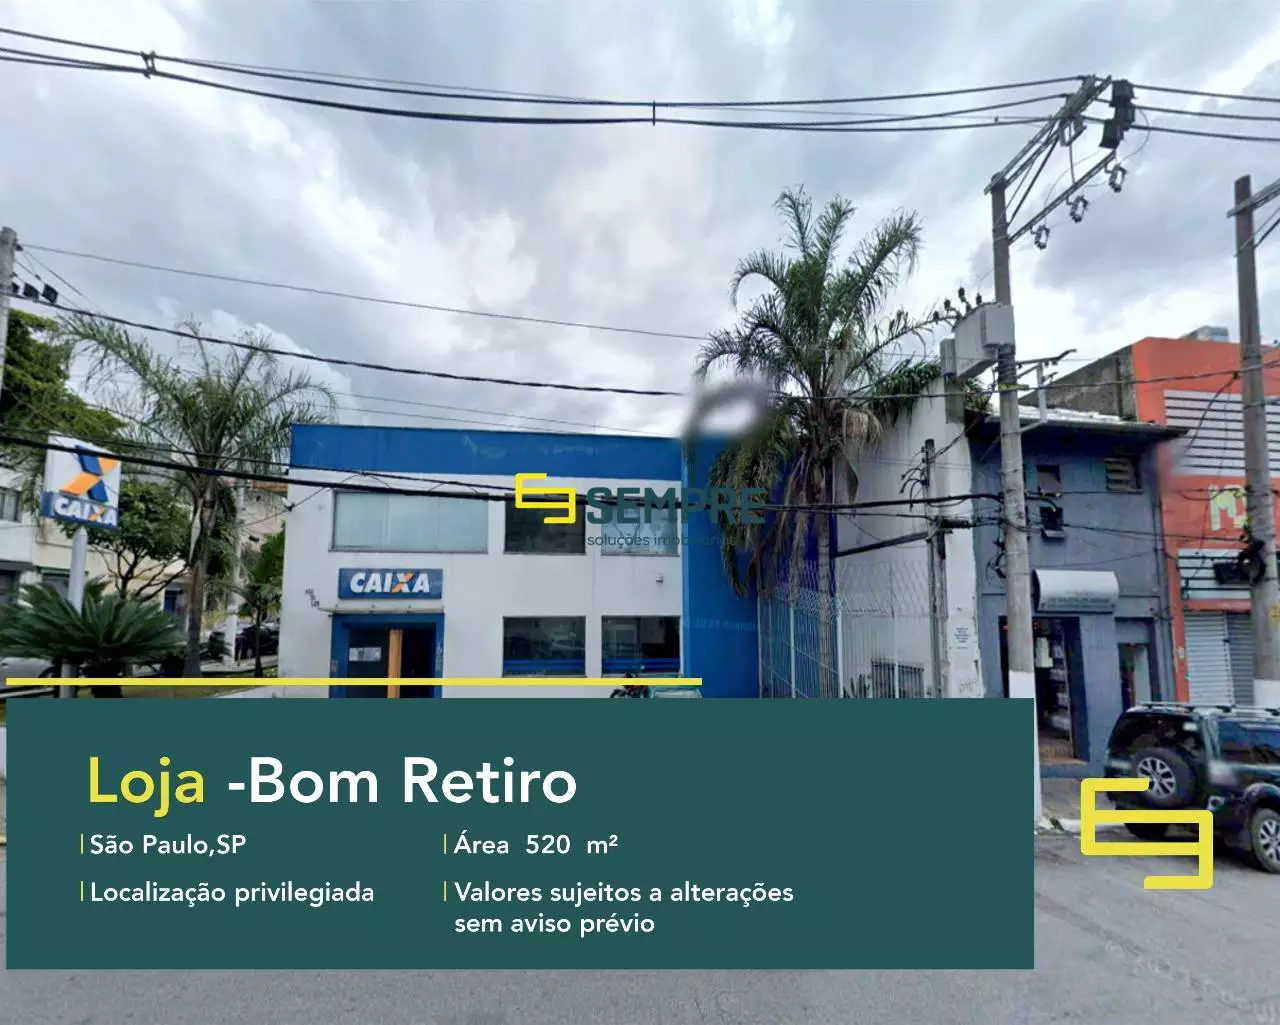 Loja à venda no Bom Retiro em São Paulo, excelente localização. O estabelecimento comercial conta, sobretudo, com área de 520,5 m².